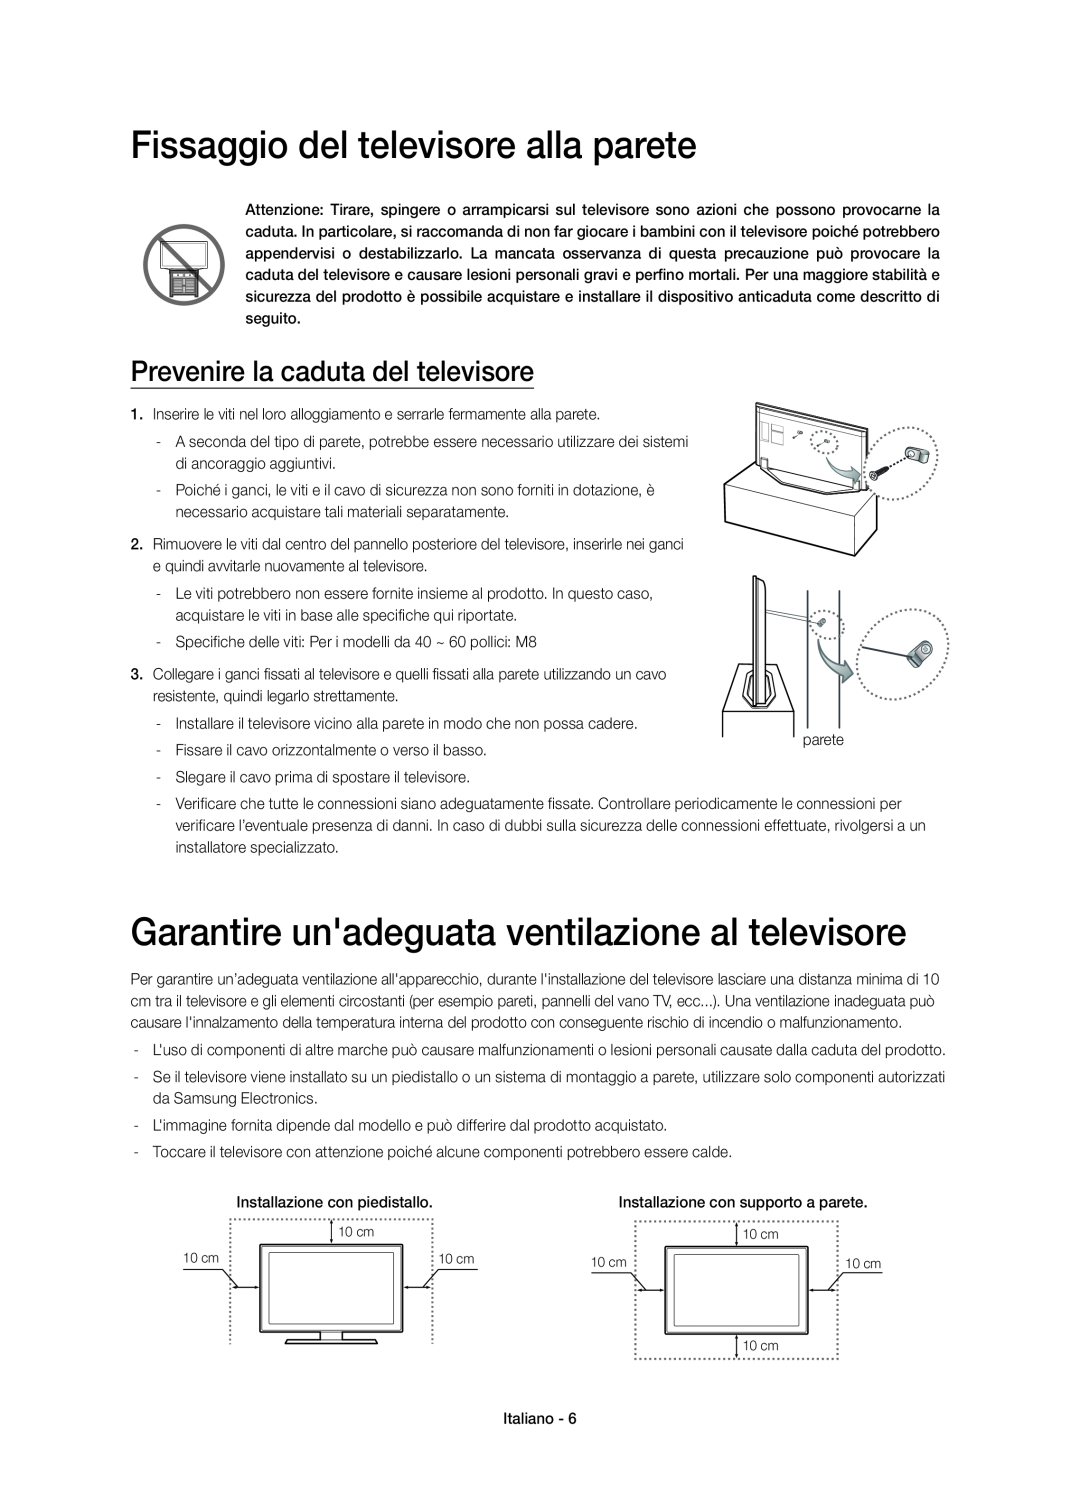 Samsung UE55H7000SZXZT manual Fissaggio del televisore alla parete, Garantire unadeguata ventilazione al televisore 